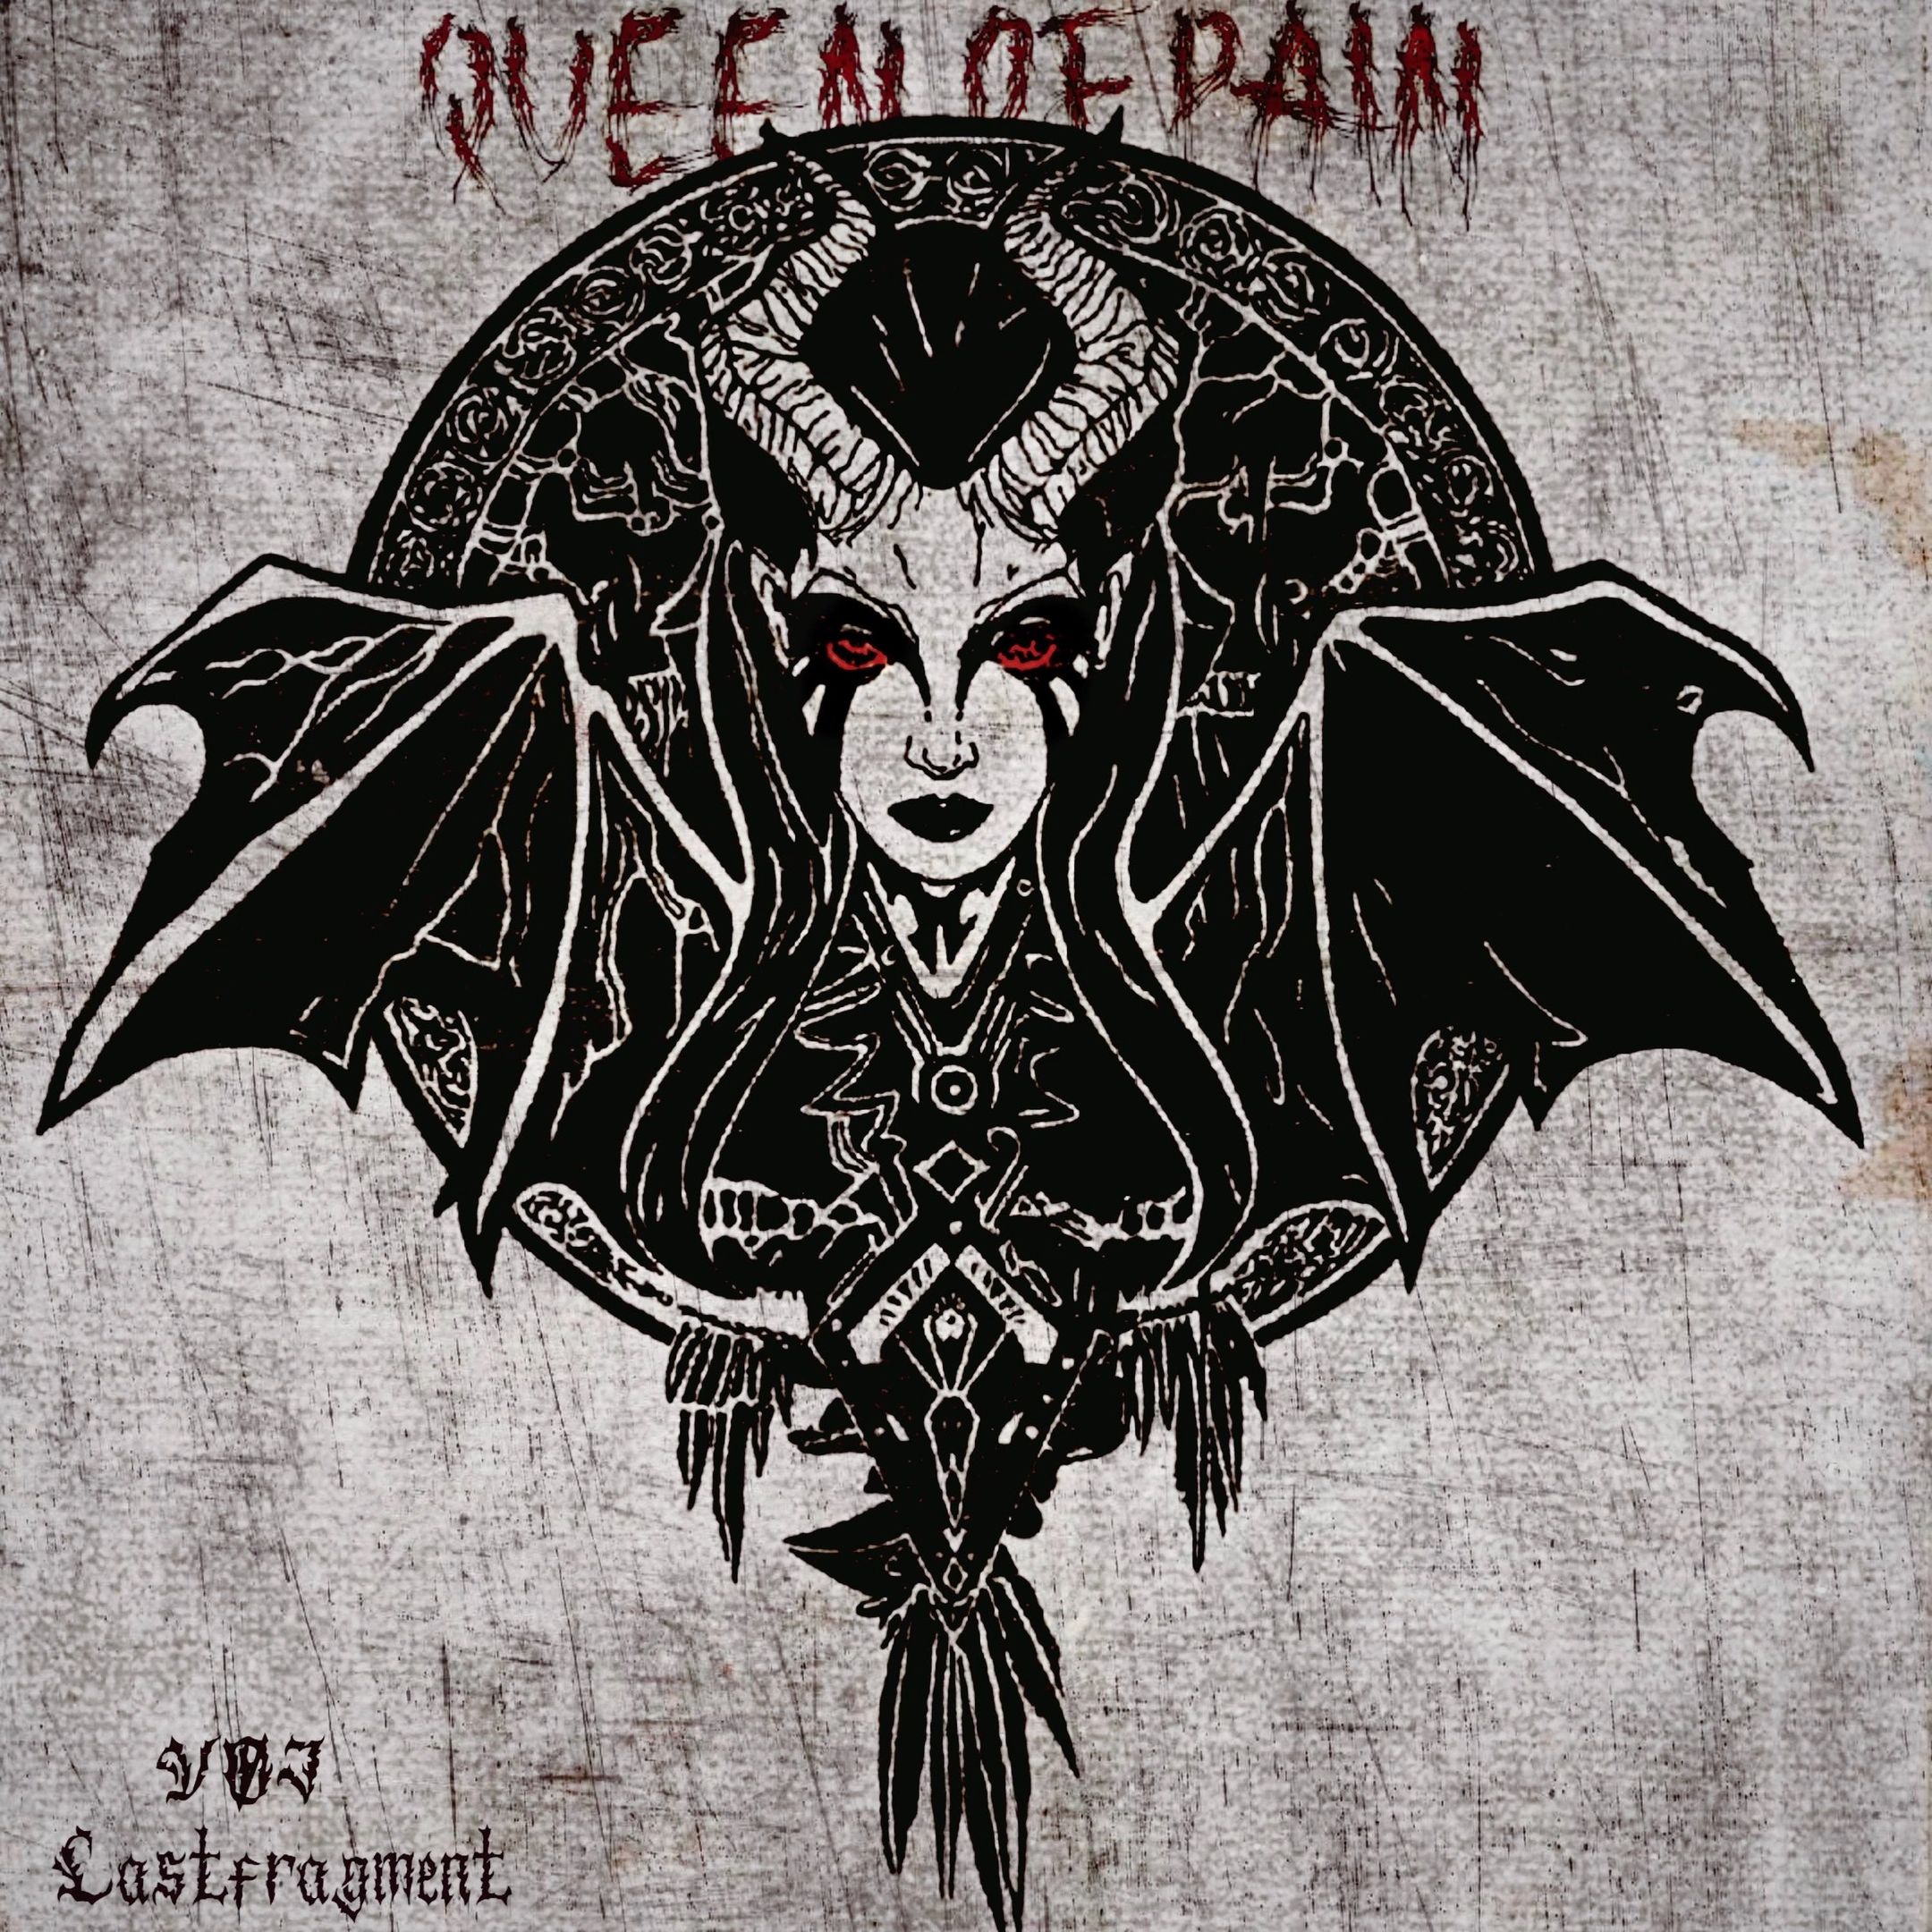 ดาวน์โหลด VØJ & Lastfragment - Queen of Pain